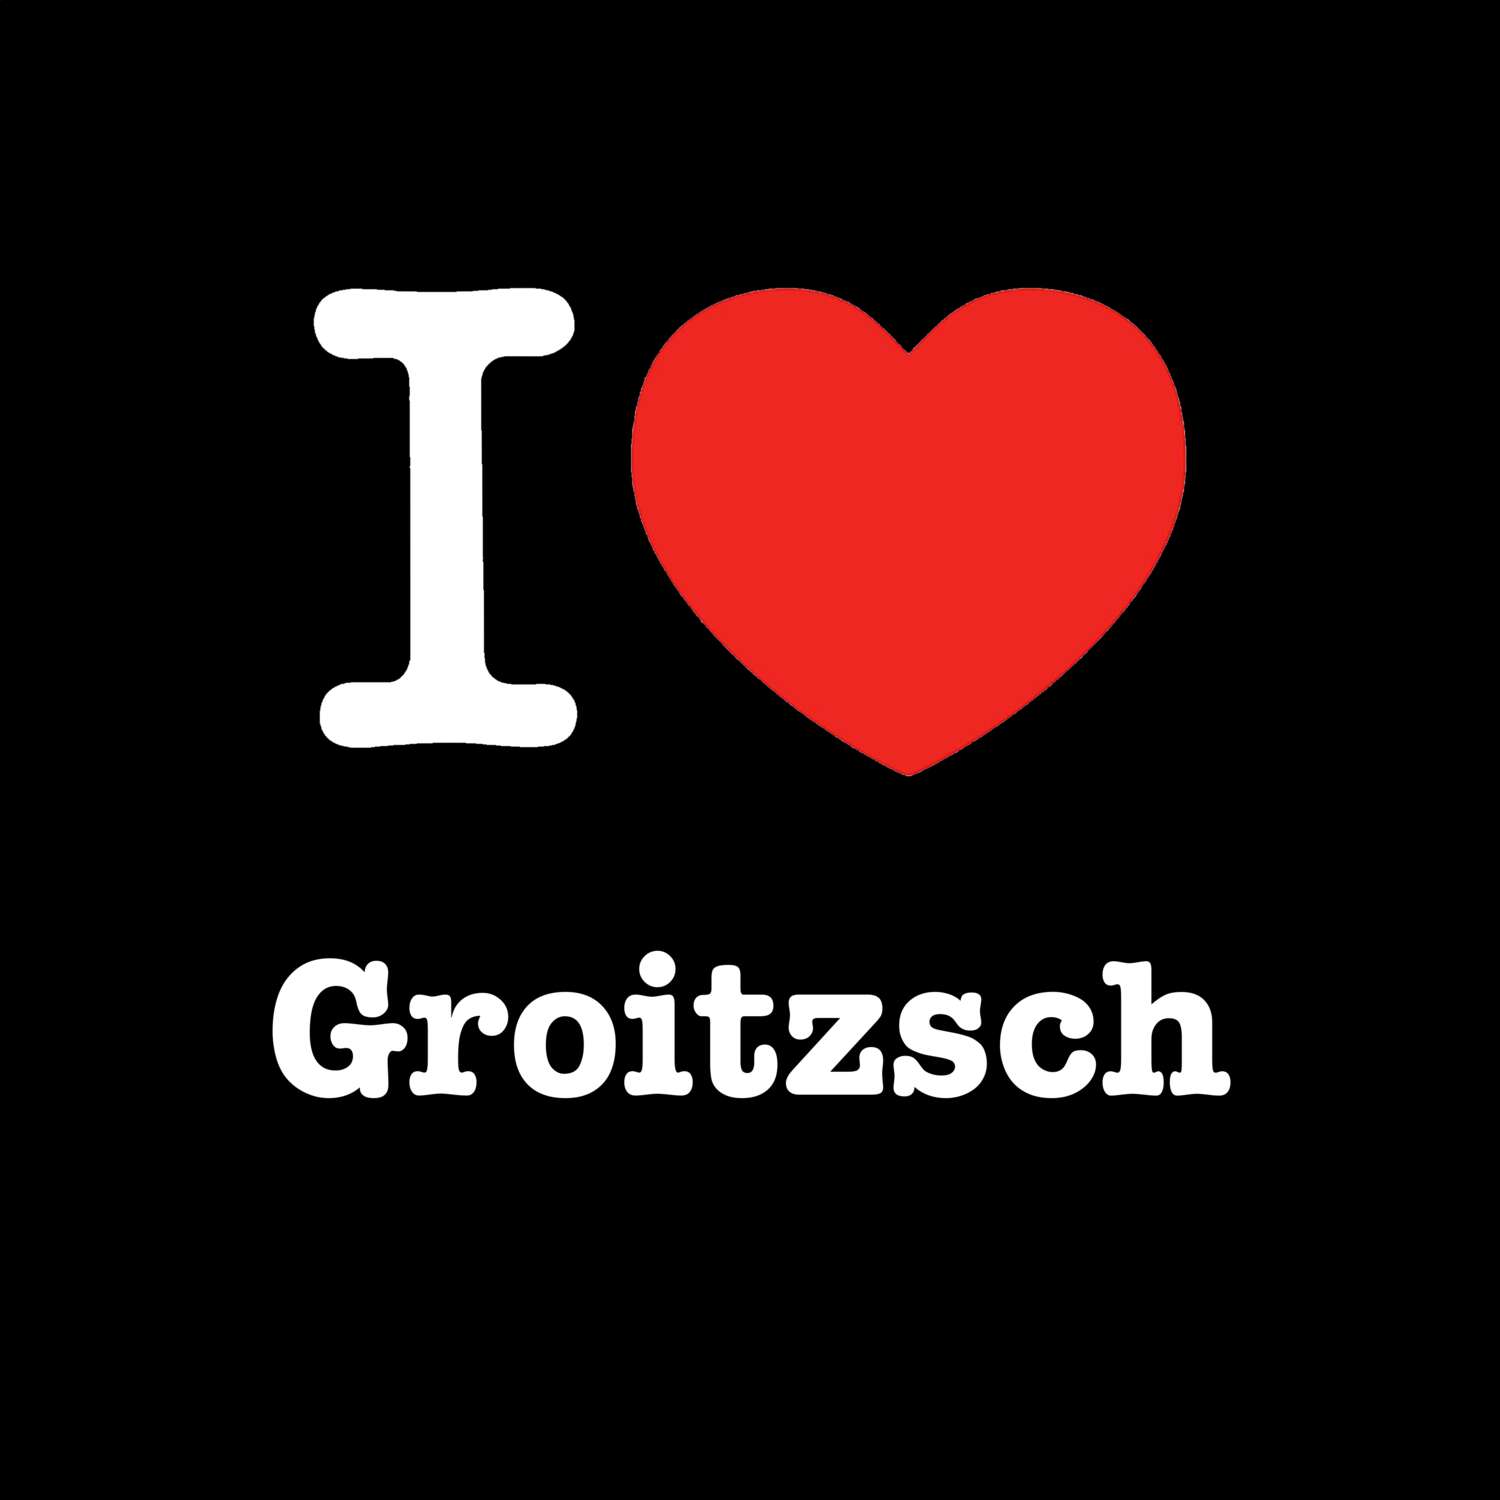 Groitzsch T-Shirt »I love«